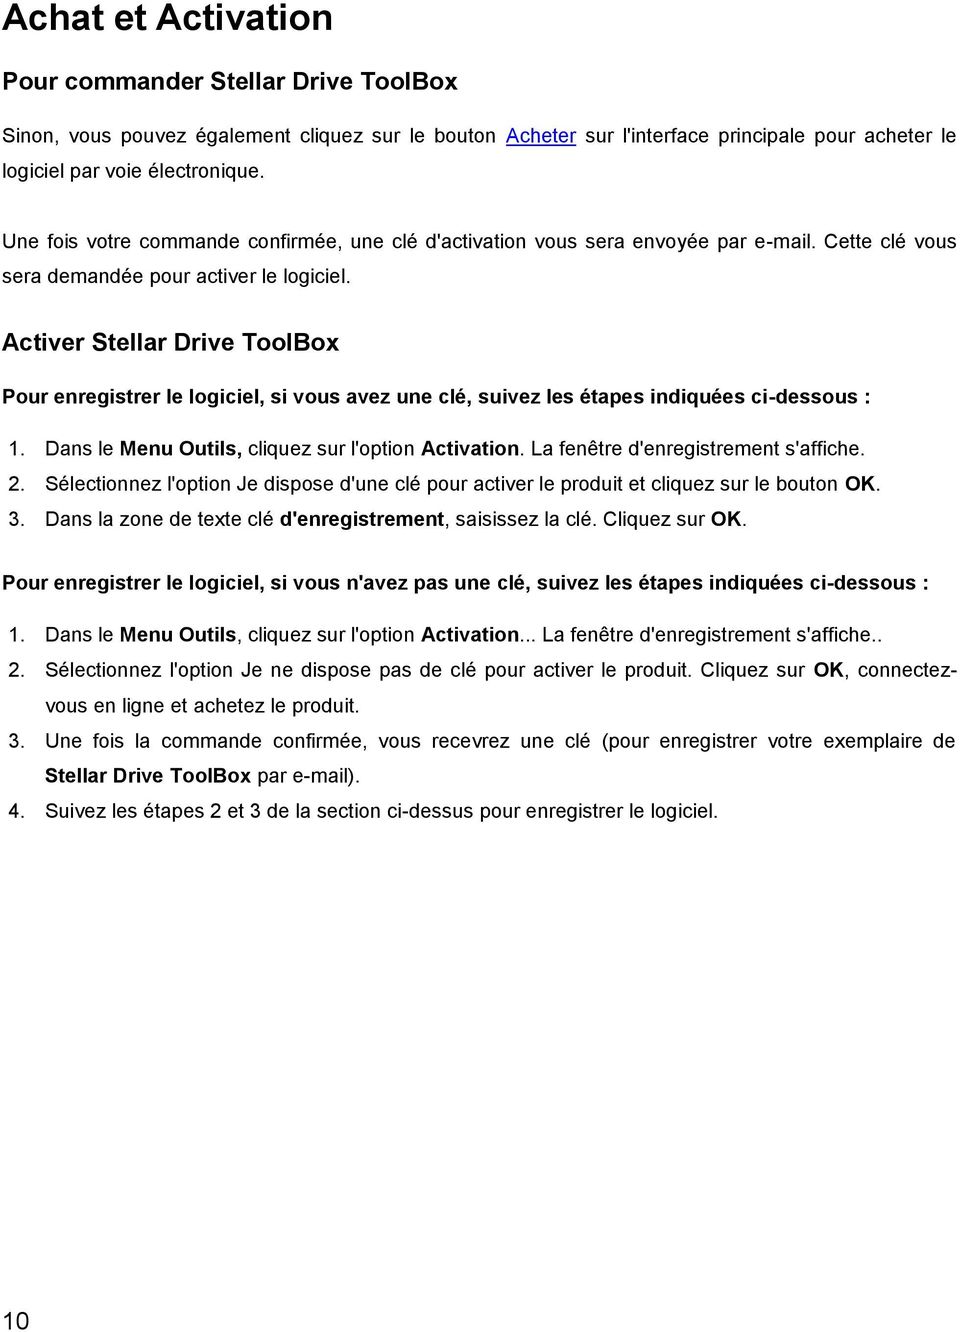 Activer Stellar Drive ToolBox Pour enregistrer le logiciel, si vous avez une clé, suivez les étapes indiquées ci-dessous : 1. Dans le Menu Outils, cliquez sur l'option Activation.